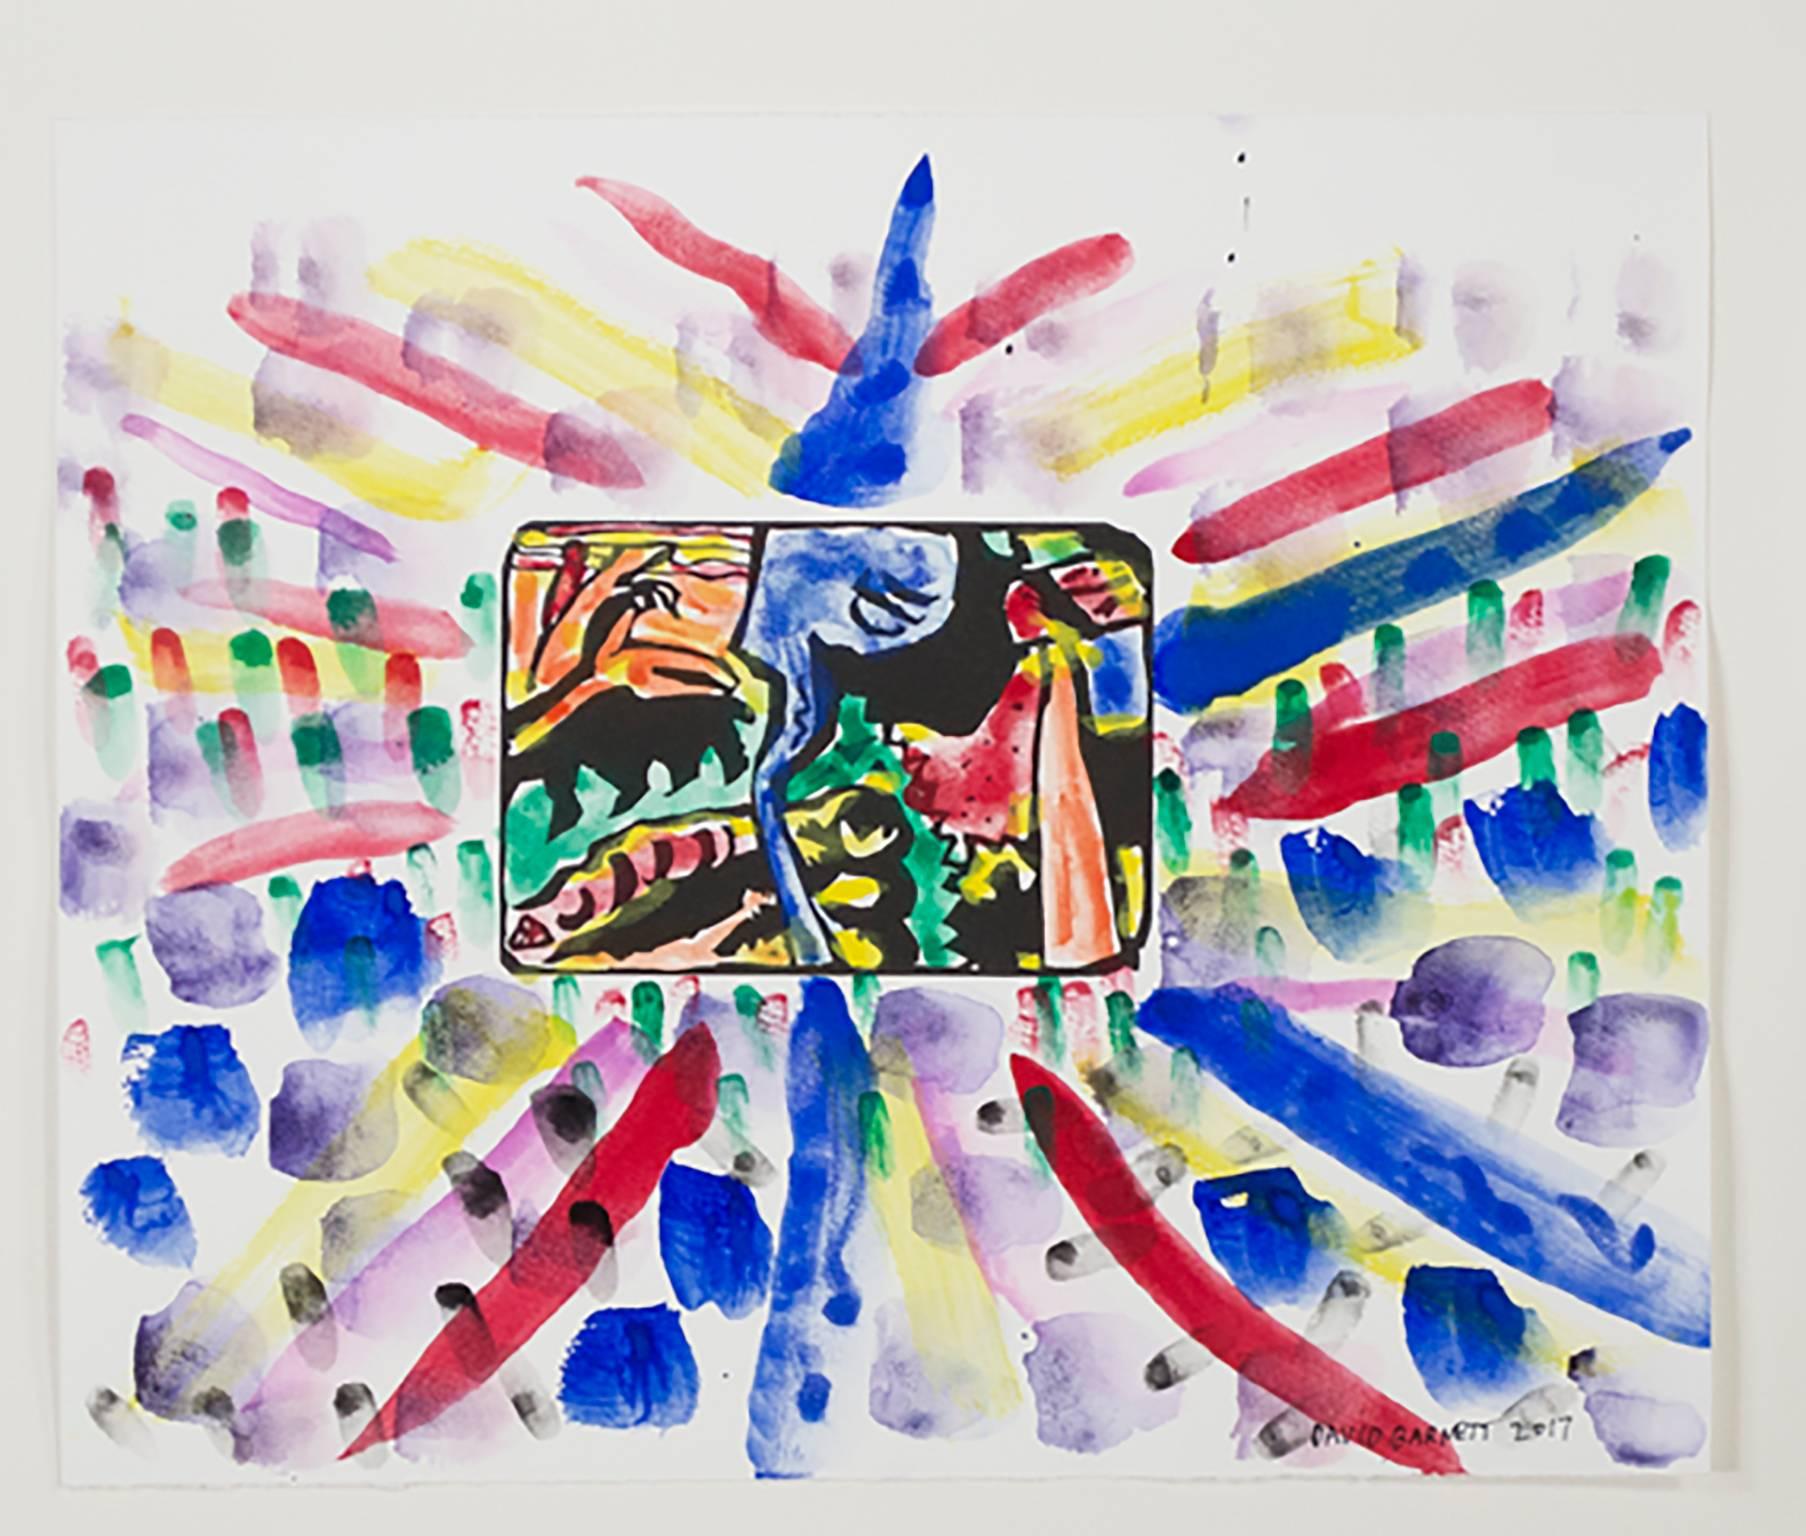 "Berühmte Künstler Serie: Hommage an Wassily Kandinsky nach 1911 "Improvisation 5" (seitenverkehrt) Holzschnitt aus Klange (Sounds) Ser." ist ein Original Aquarell in Mischtechnik auf Papier von David Barnett. Der Künstler hat das Werk unten rechts